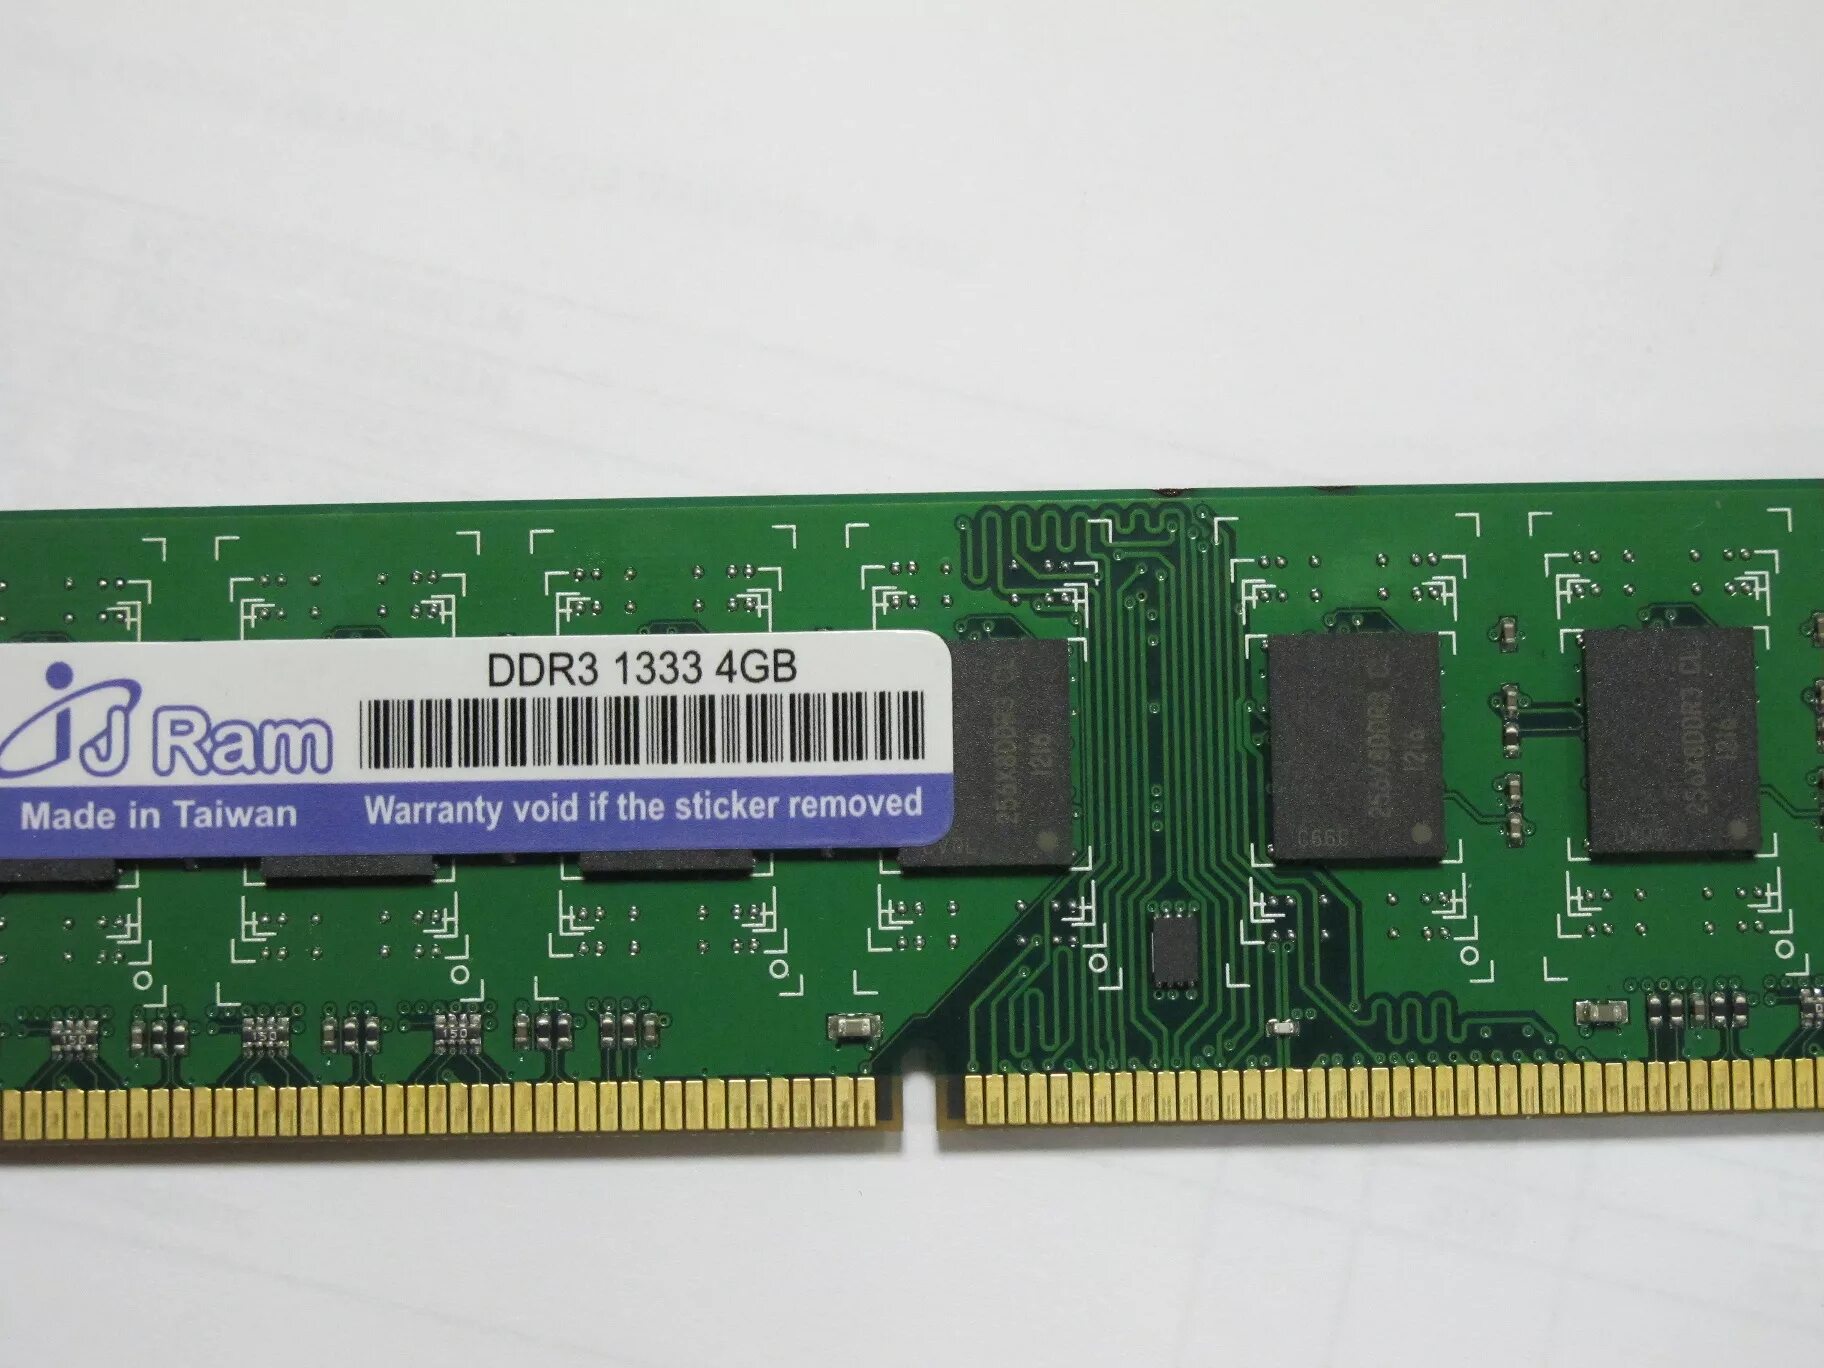 Ddr3 1333 4gb купить. IJ Ram ddr3 1333 2gb. JRAM ddr3 1333 2gb. Оперативная память 4 ГБ I J Ram. Akrs20 оперативка in Ram DDR 3.